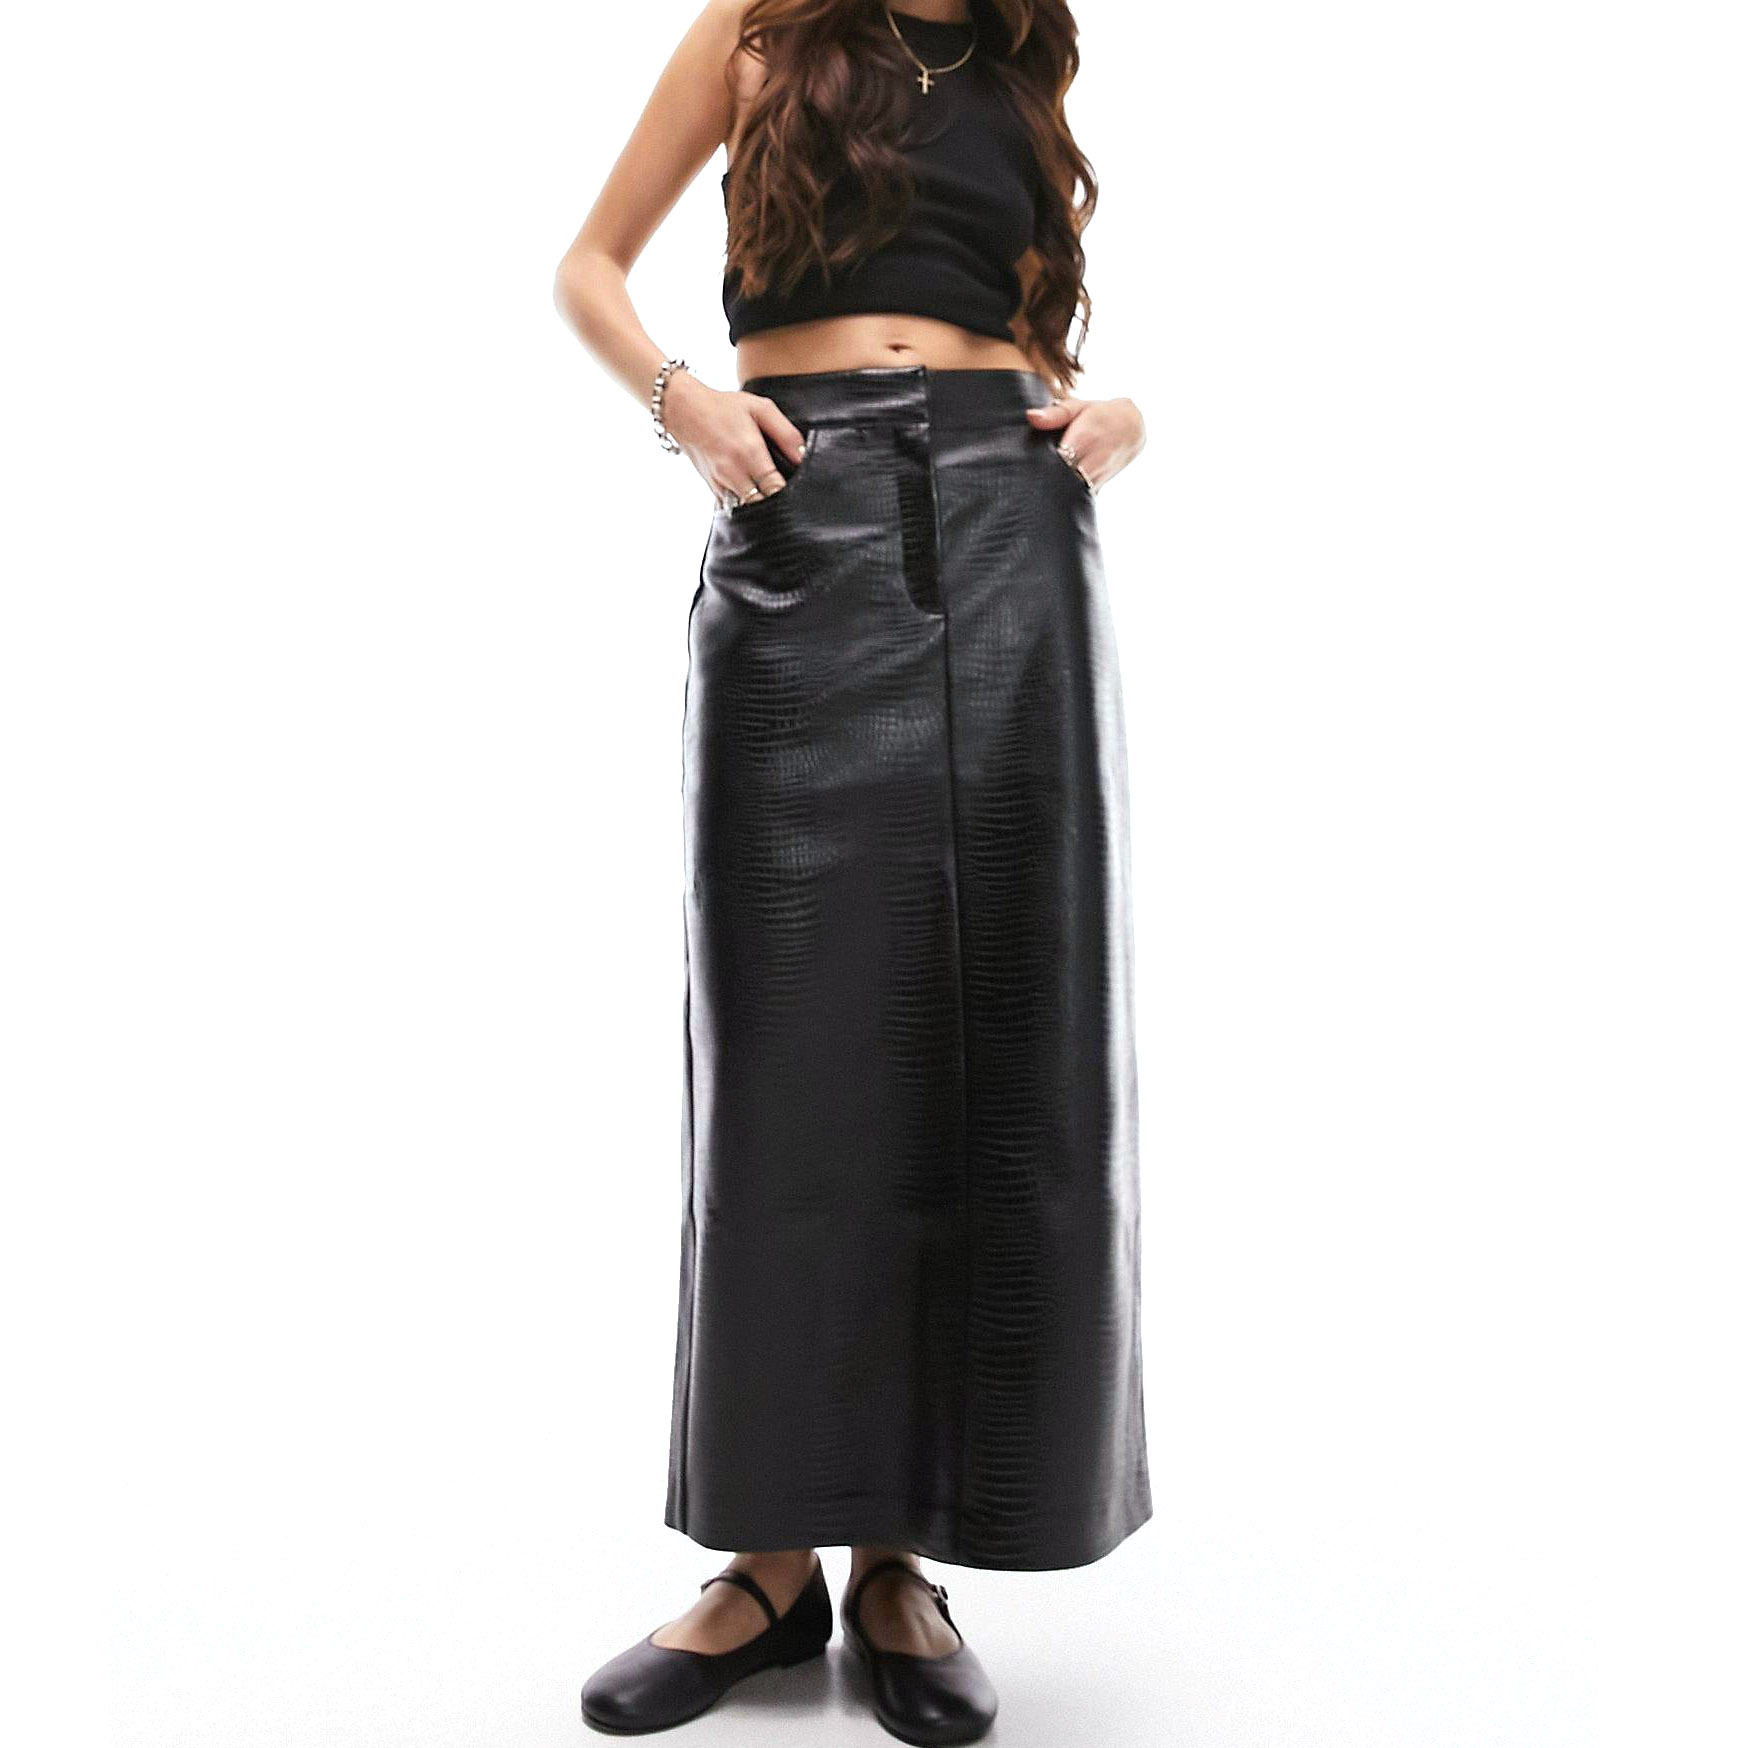 Юбка Topshop Leather Look Midi, черный женская юбка карандаш из искусственной кожи элегантная бандажная юбка миди из искусственной кожи с высокой талией и разрезом офисная улич